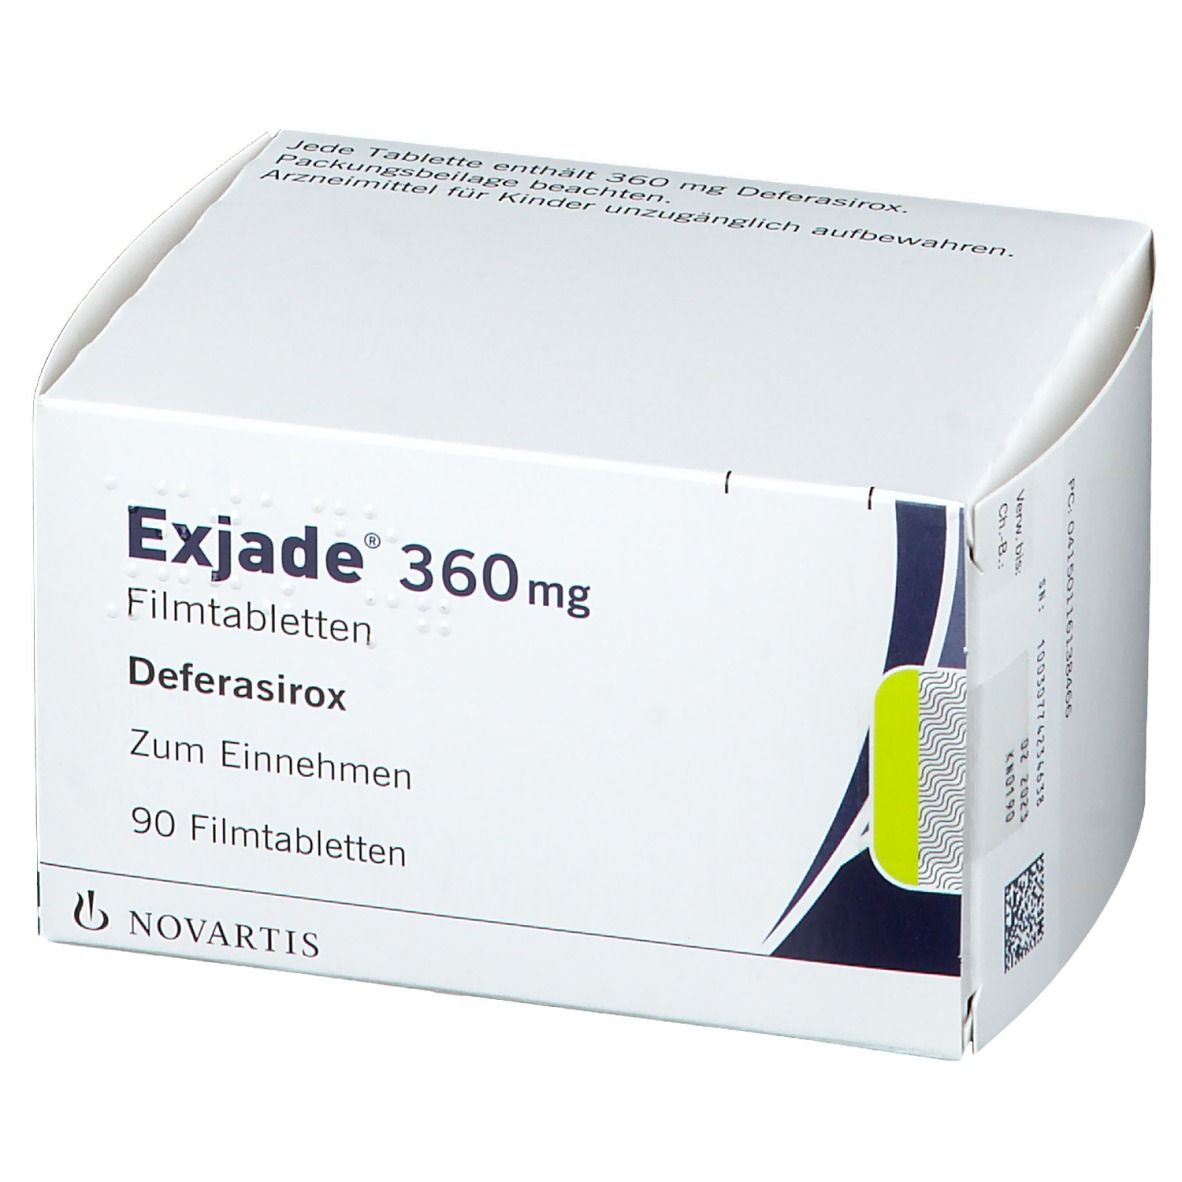 Exjade® 360 mg